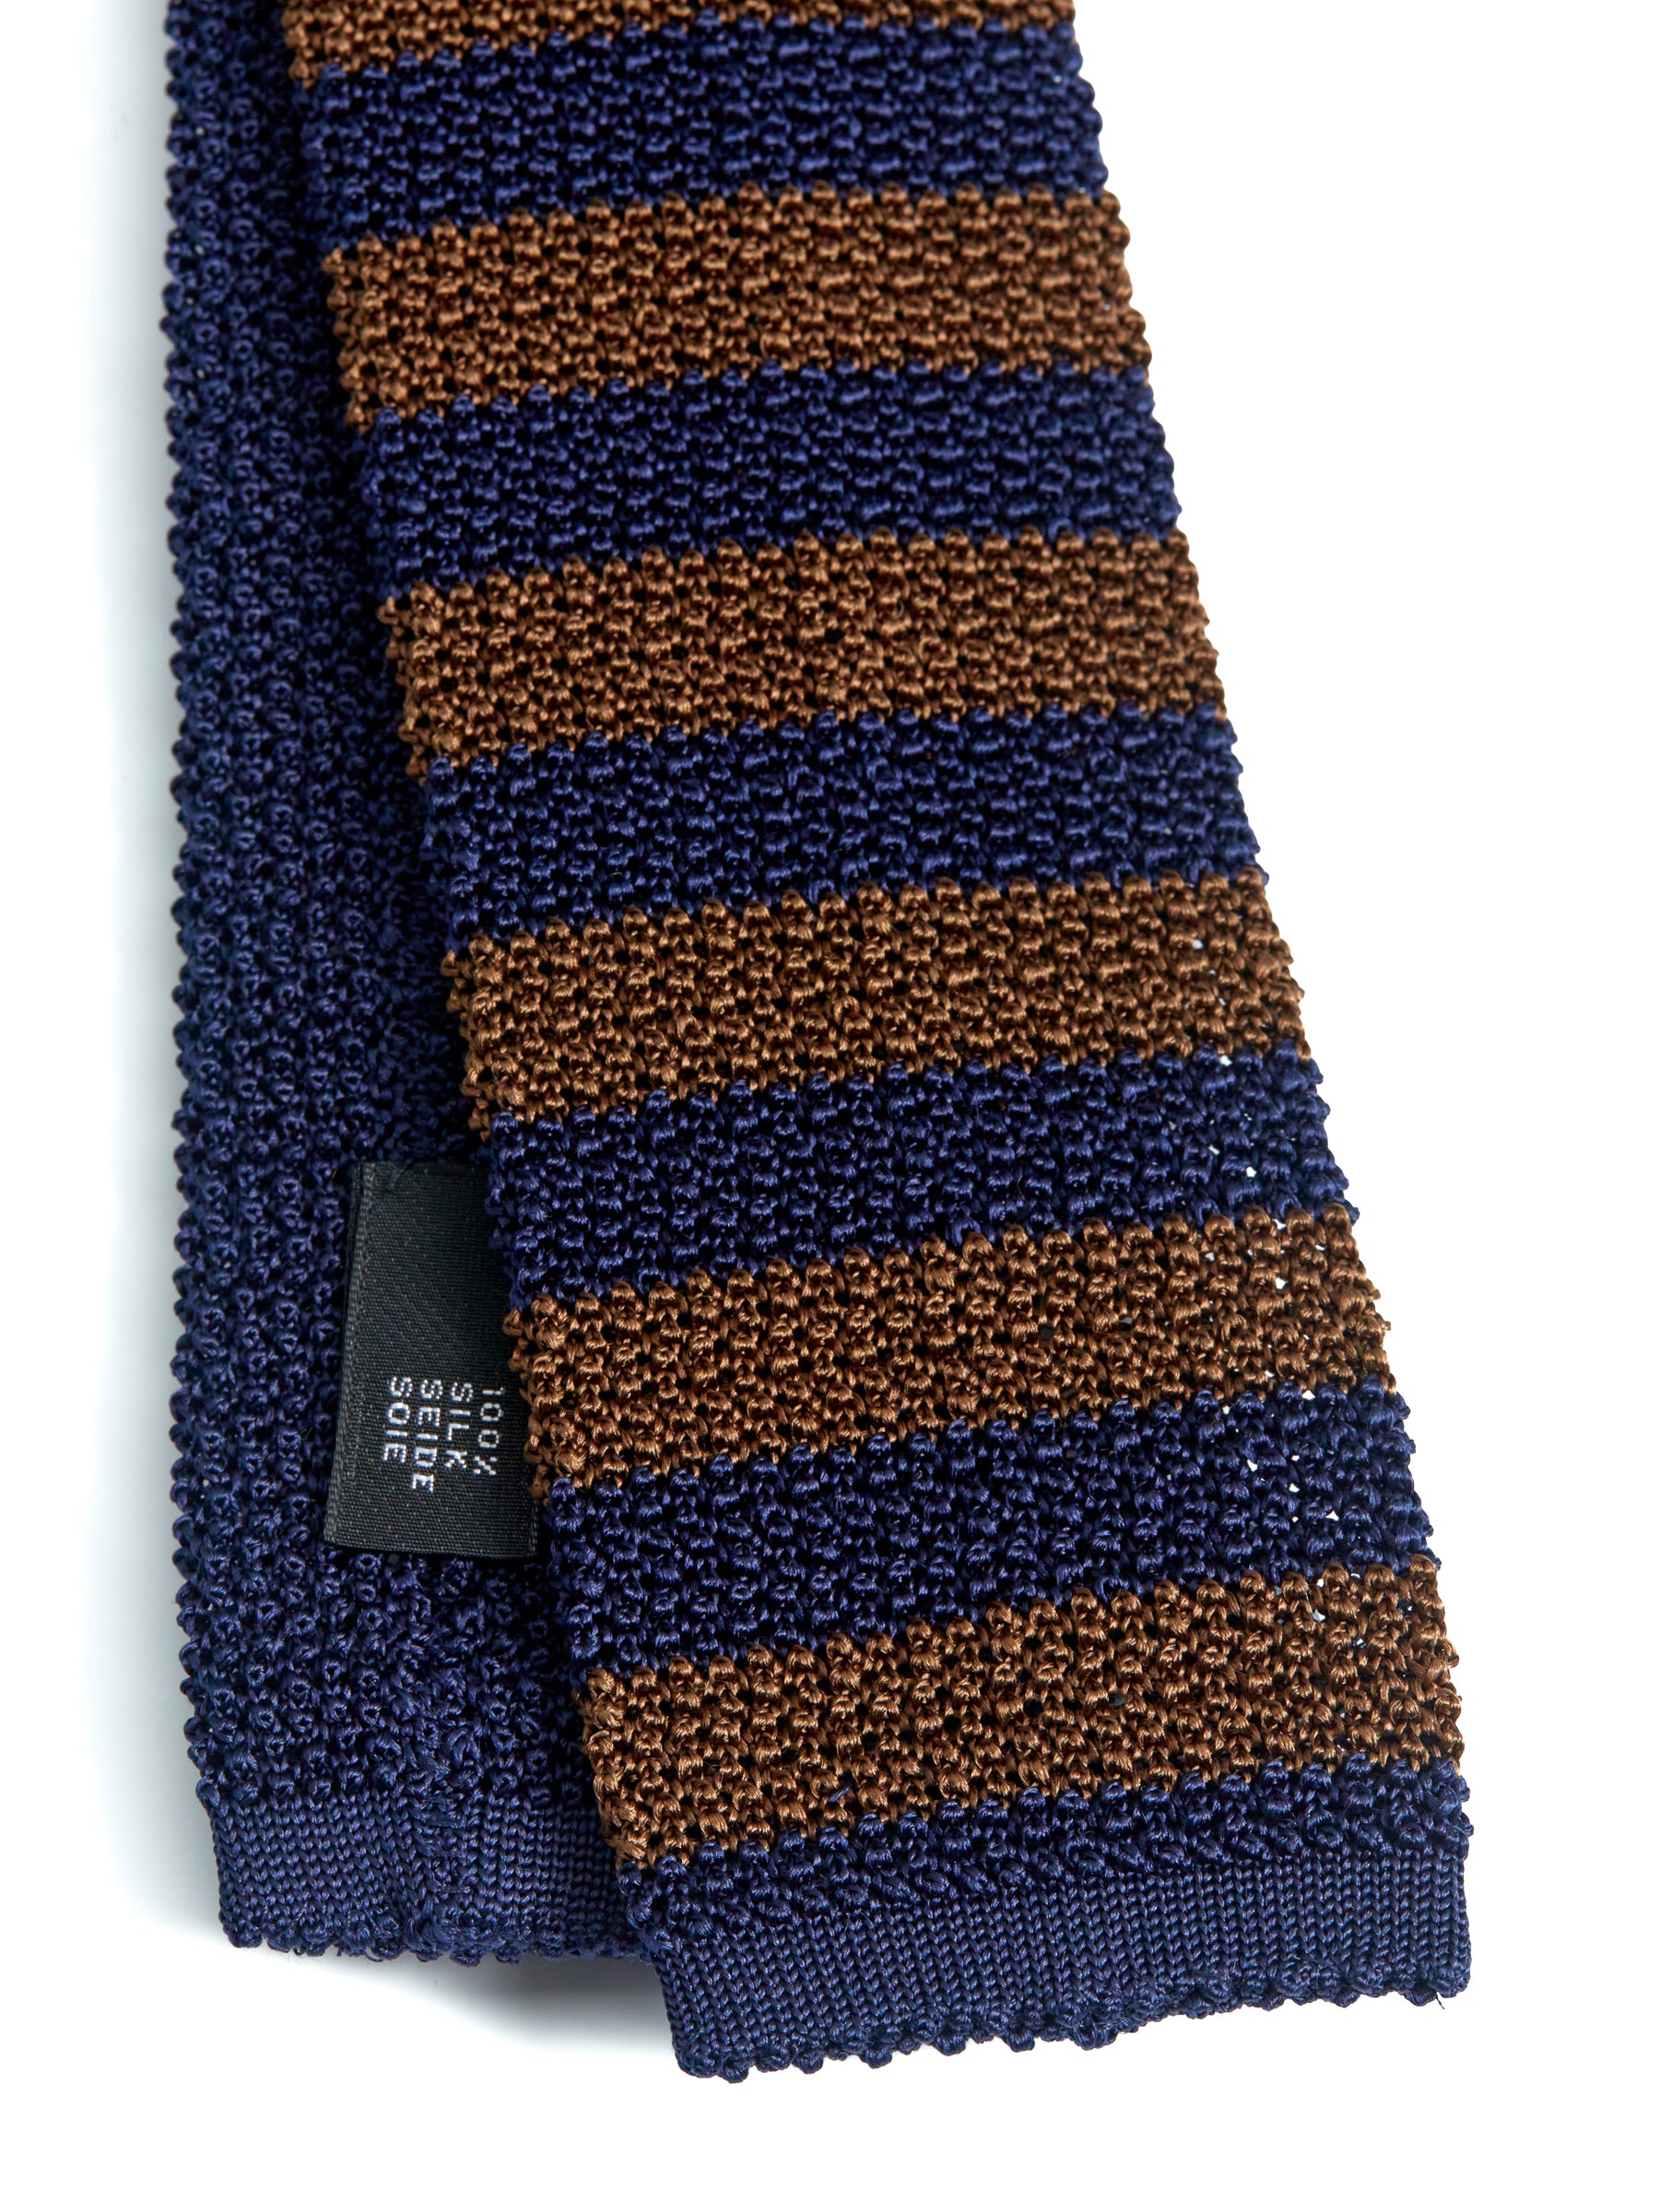 Silk Knitted Tie Navy/Brown Stripe